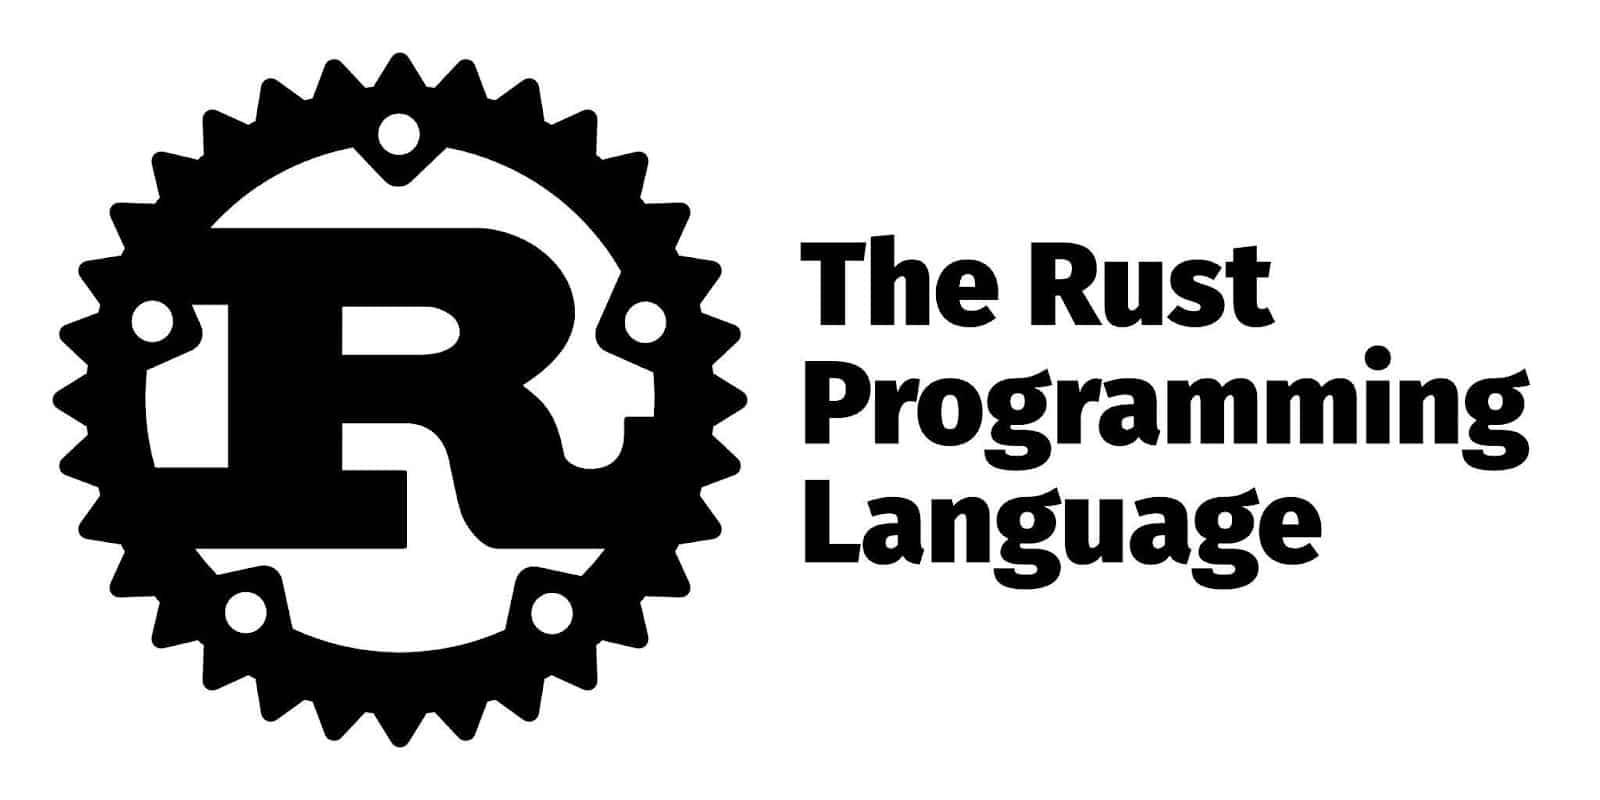 Логотип Rust с названием жирными буквами прямо на изображении.